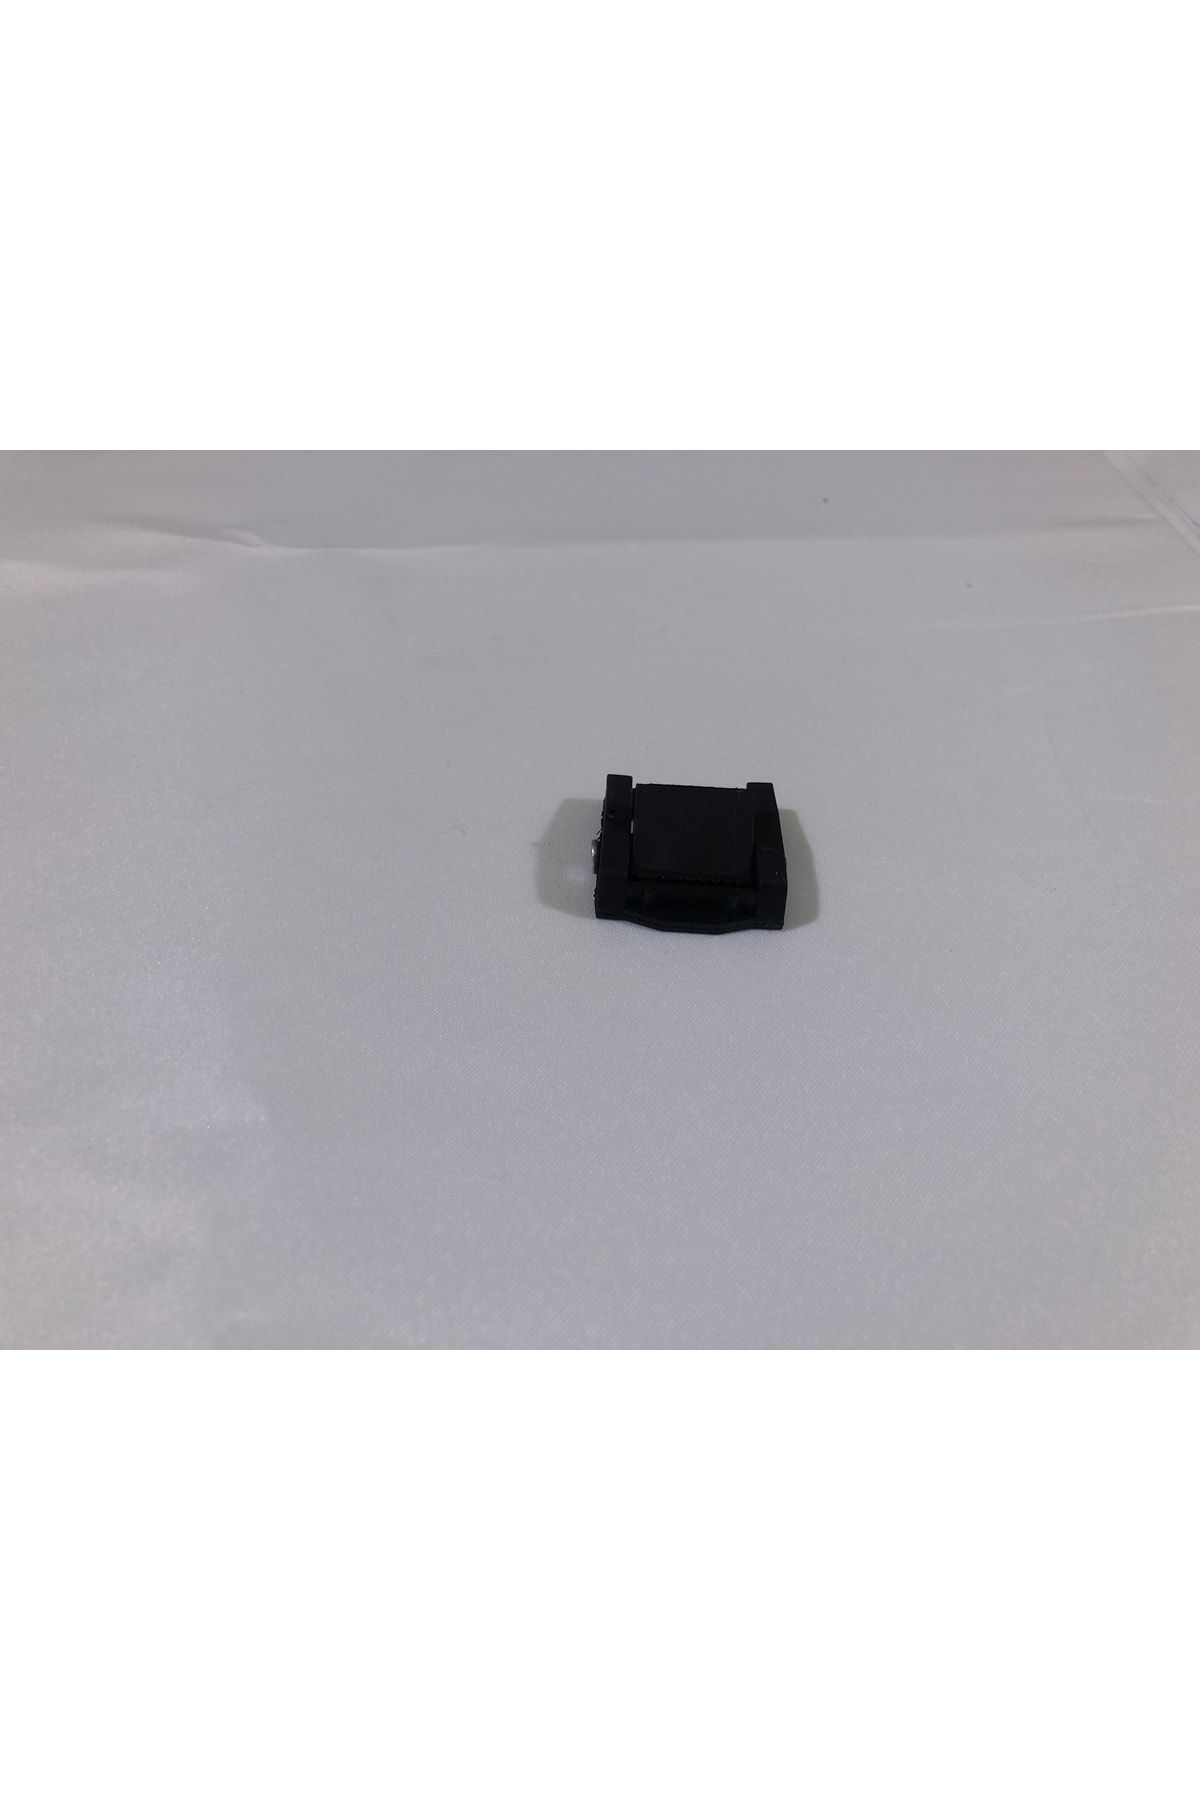 Üçyıldız Spanzet Polyemit 25mm Mini Mandal Gerdirme Tokası 4'lü Paket